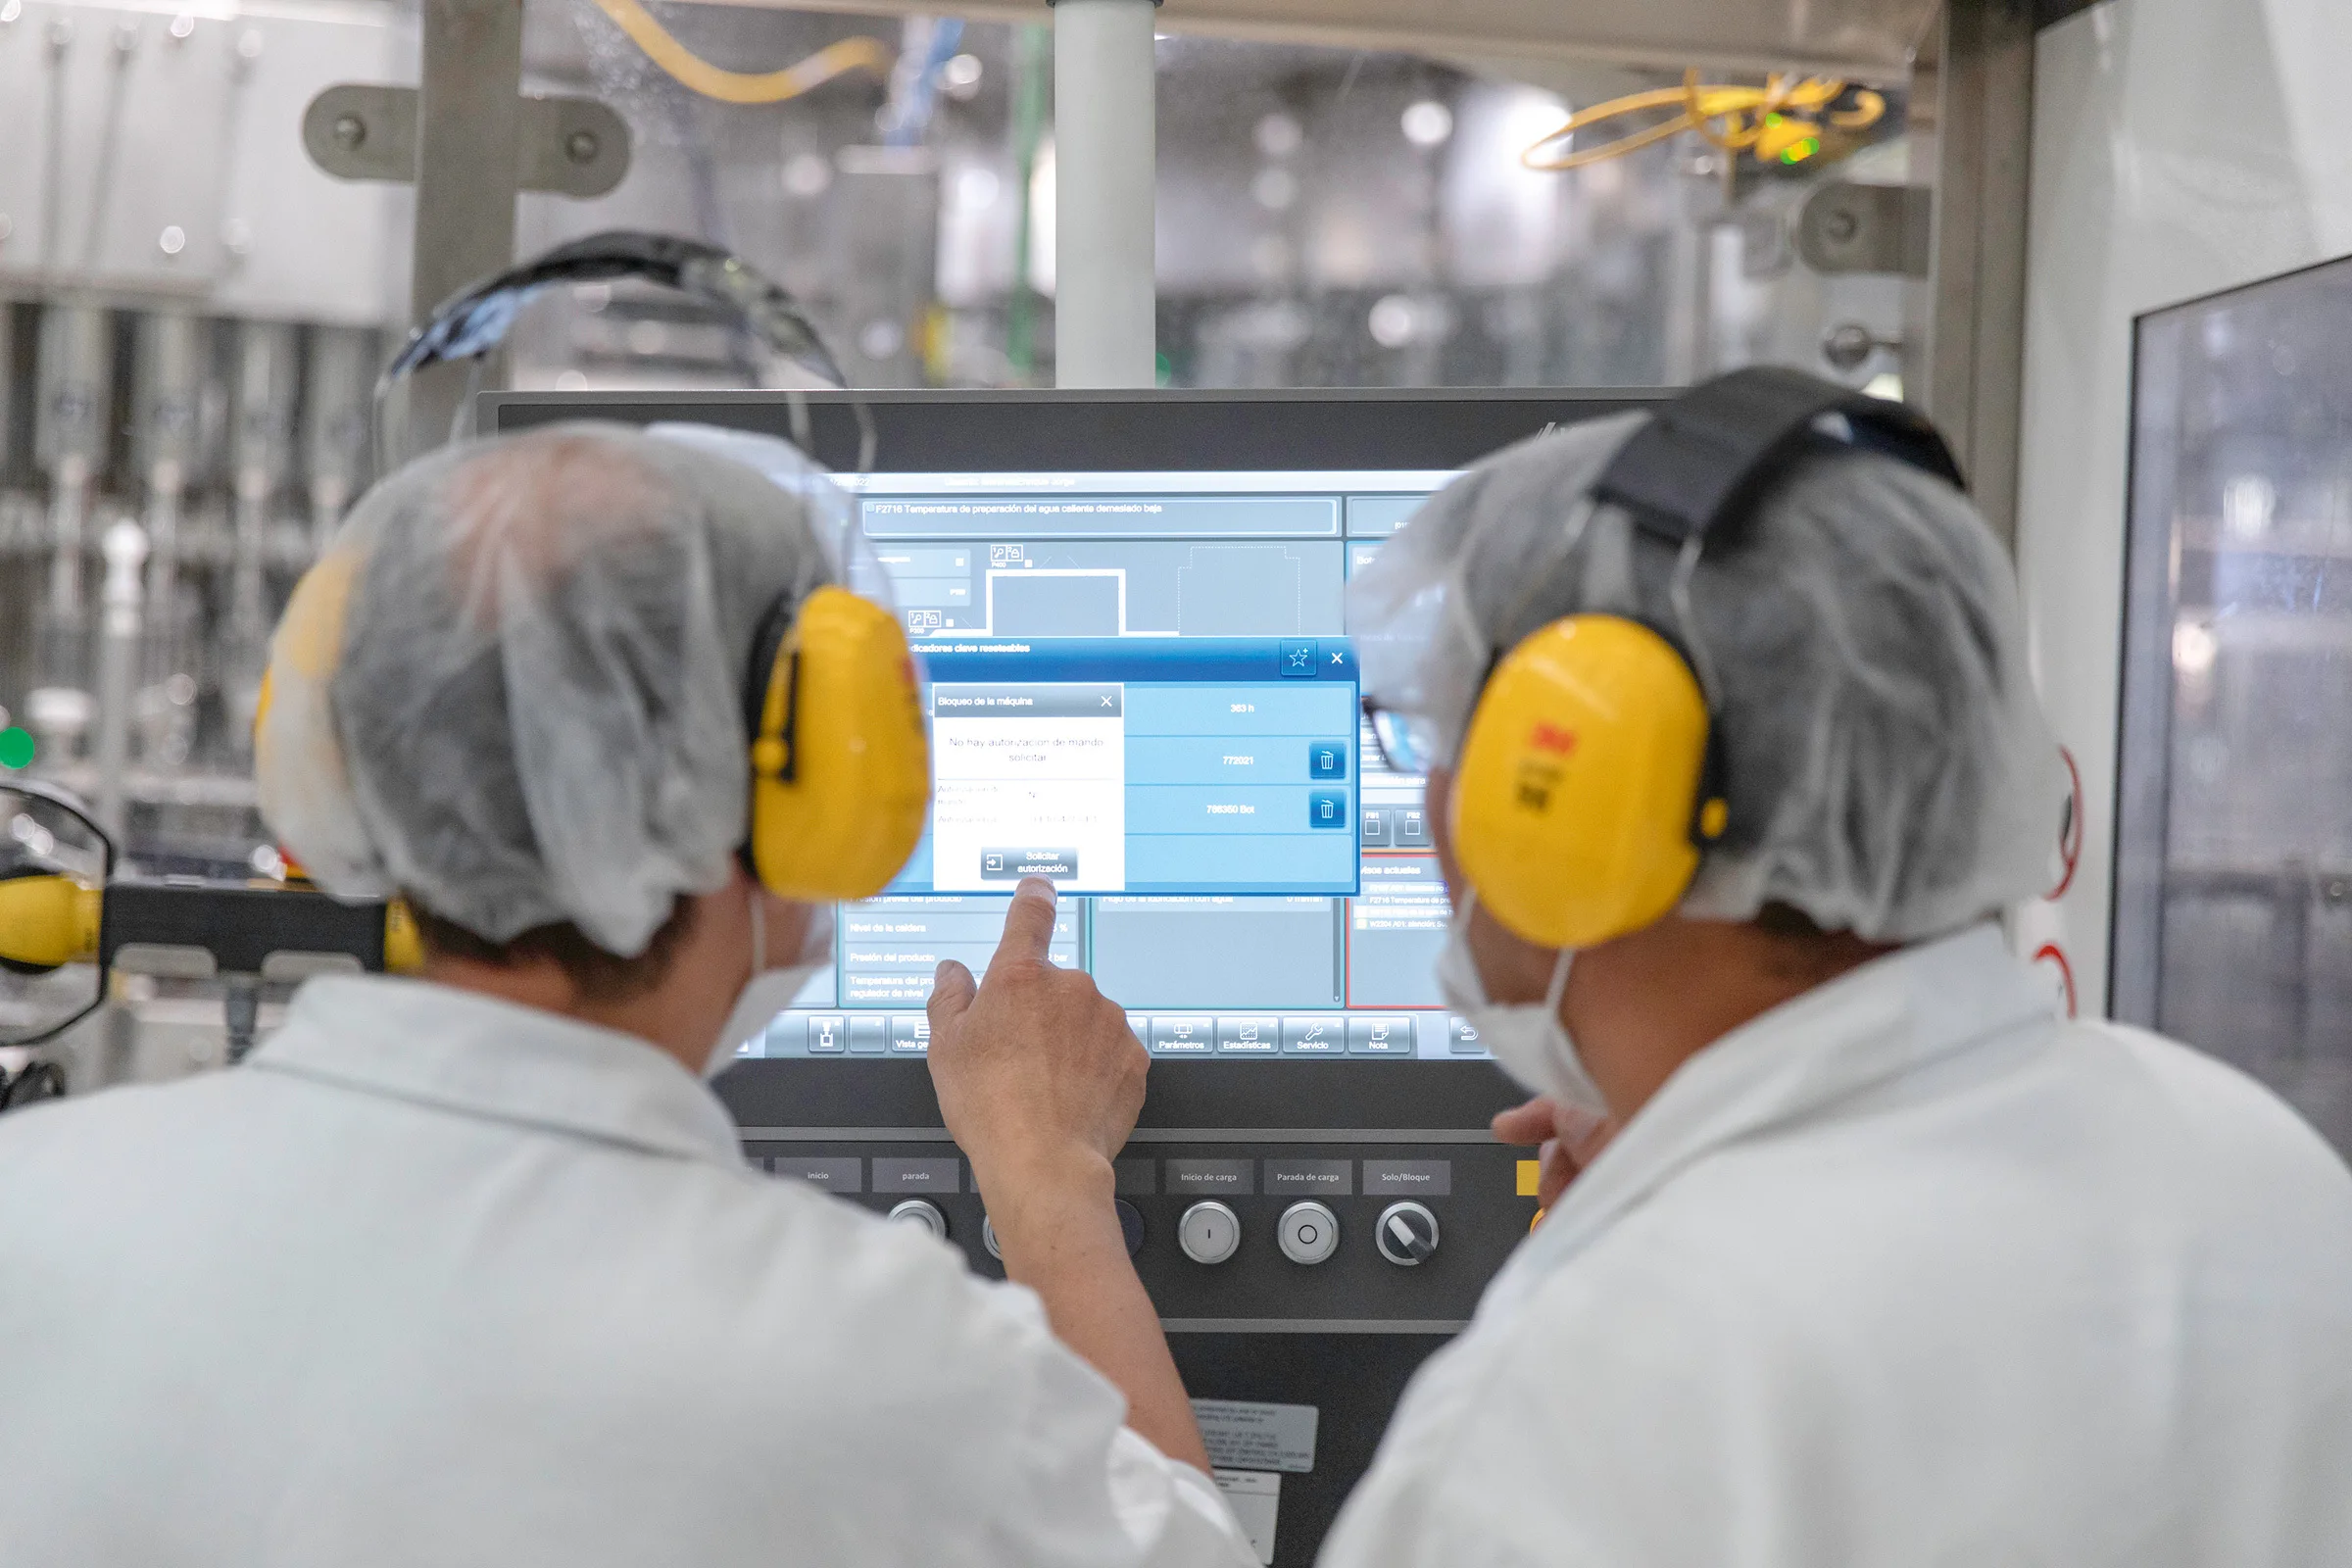 Zwei Personen mit gelbem Gehörschutz und in weißen Kitteln, die auf einen Bildschirm an einer Maschine schauen